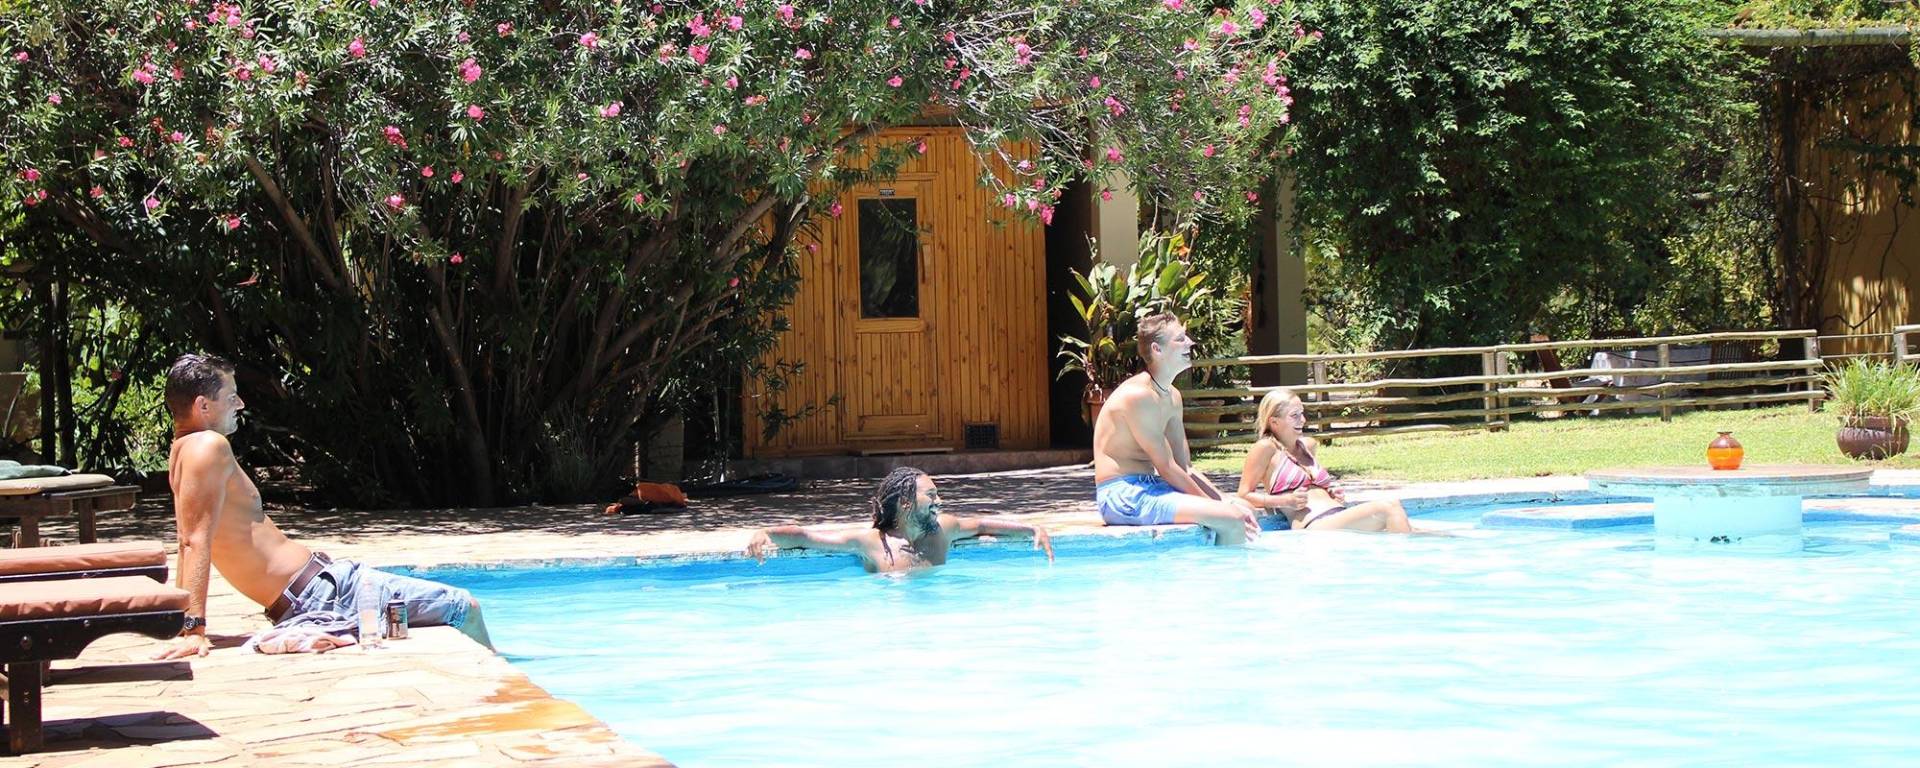 Swimming Pool - Erfrischung für die ganze Familie